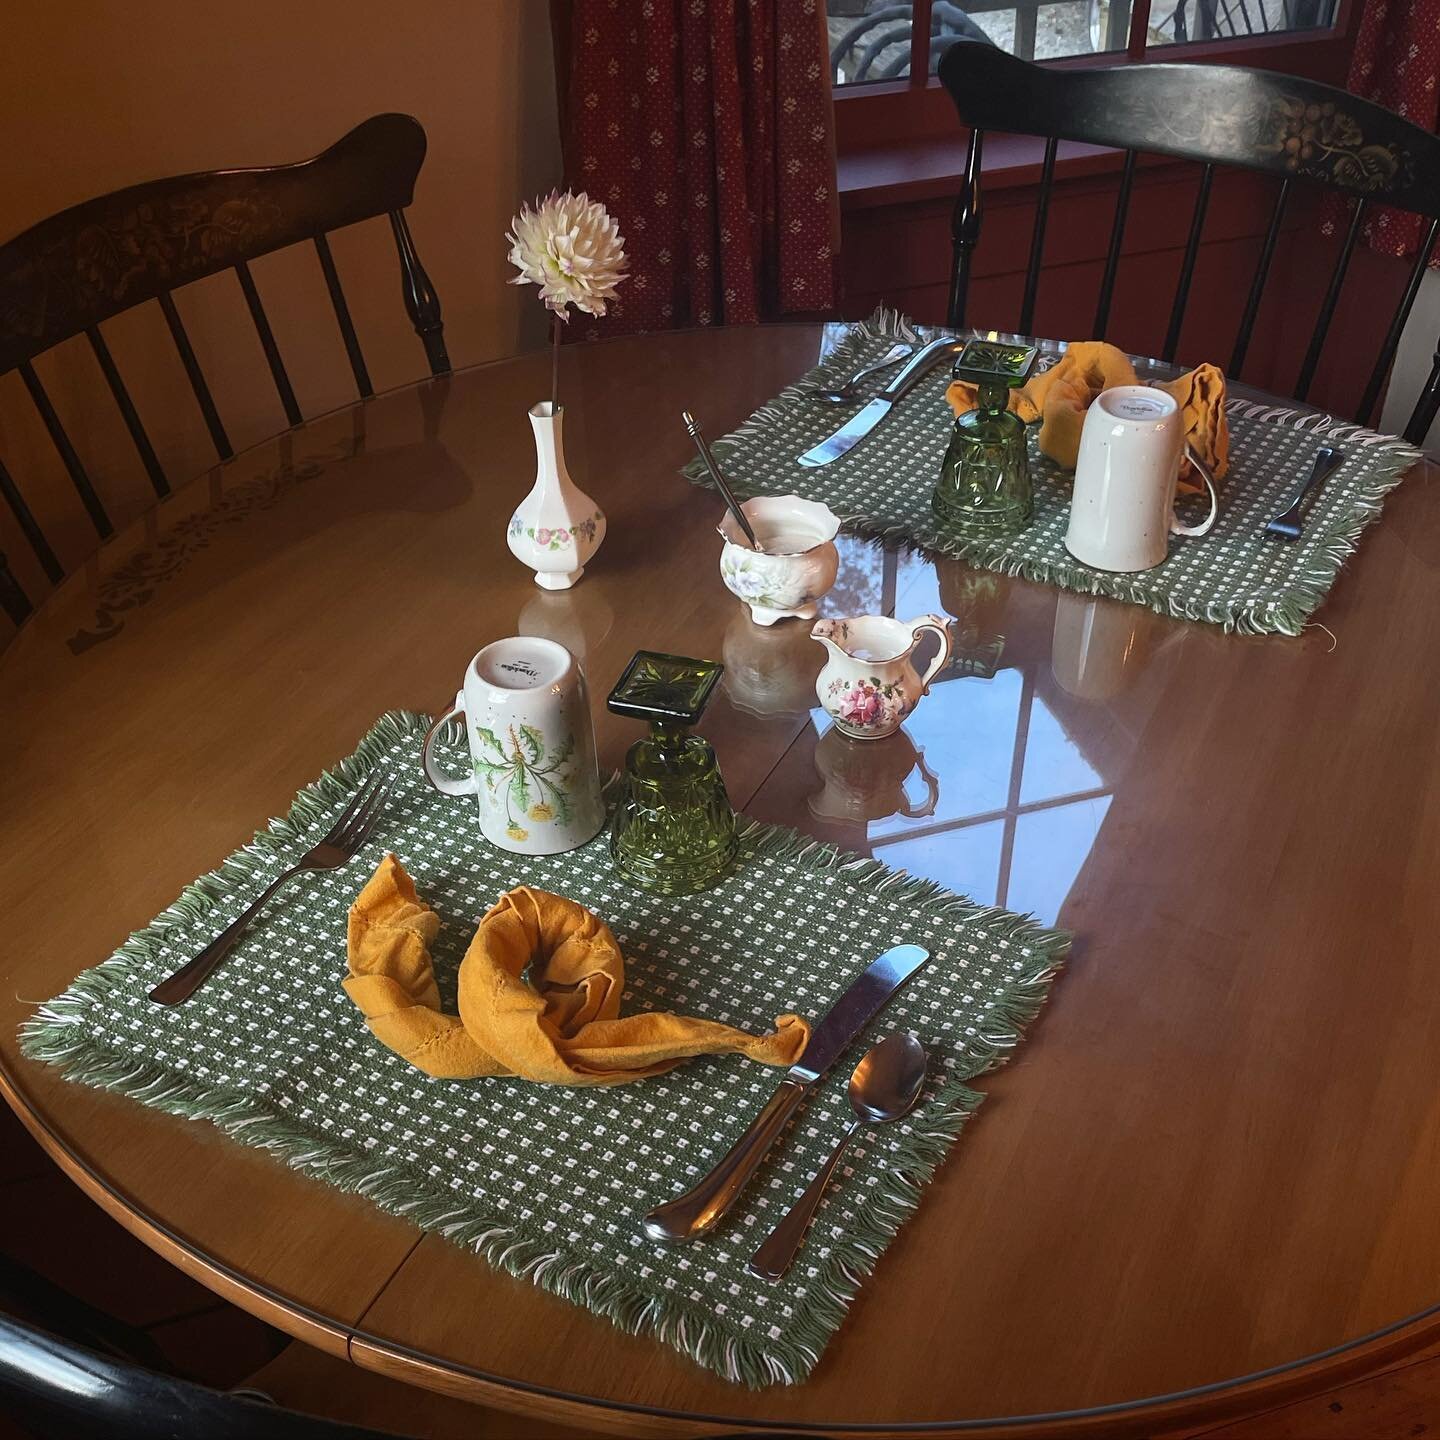 breakfast table 🍳

.
#maineinns #visitmaine #mainebedandbreakfast #mainestay